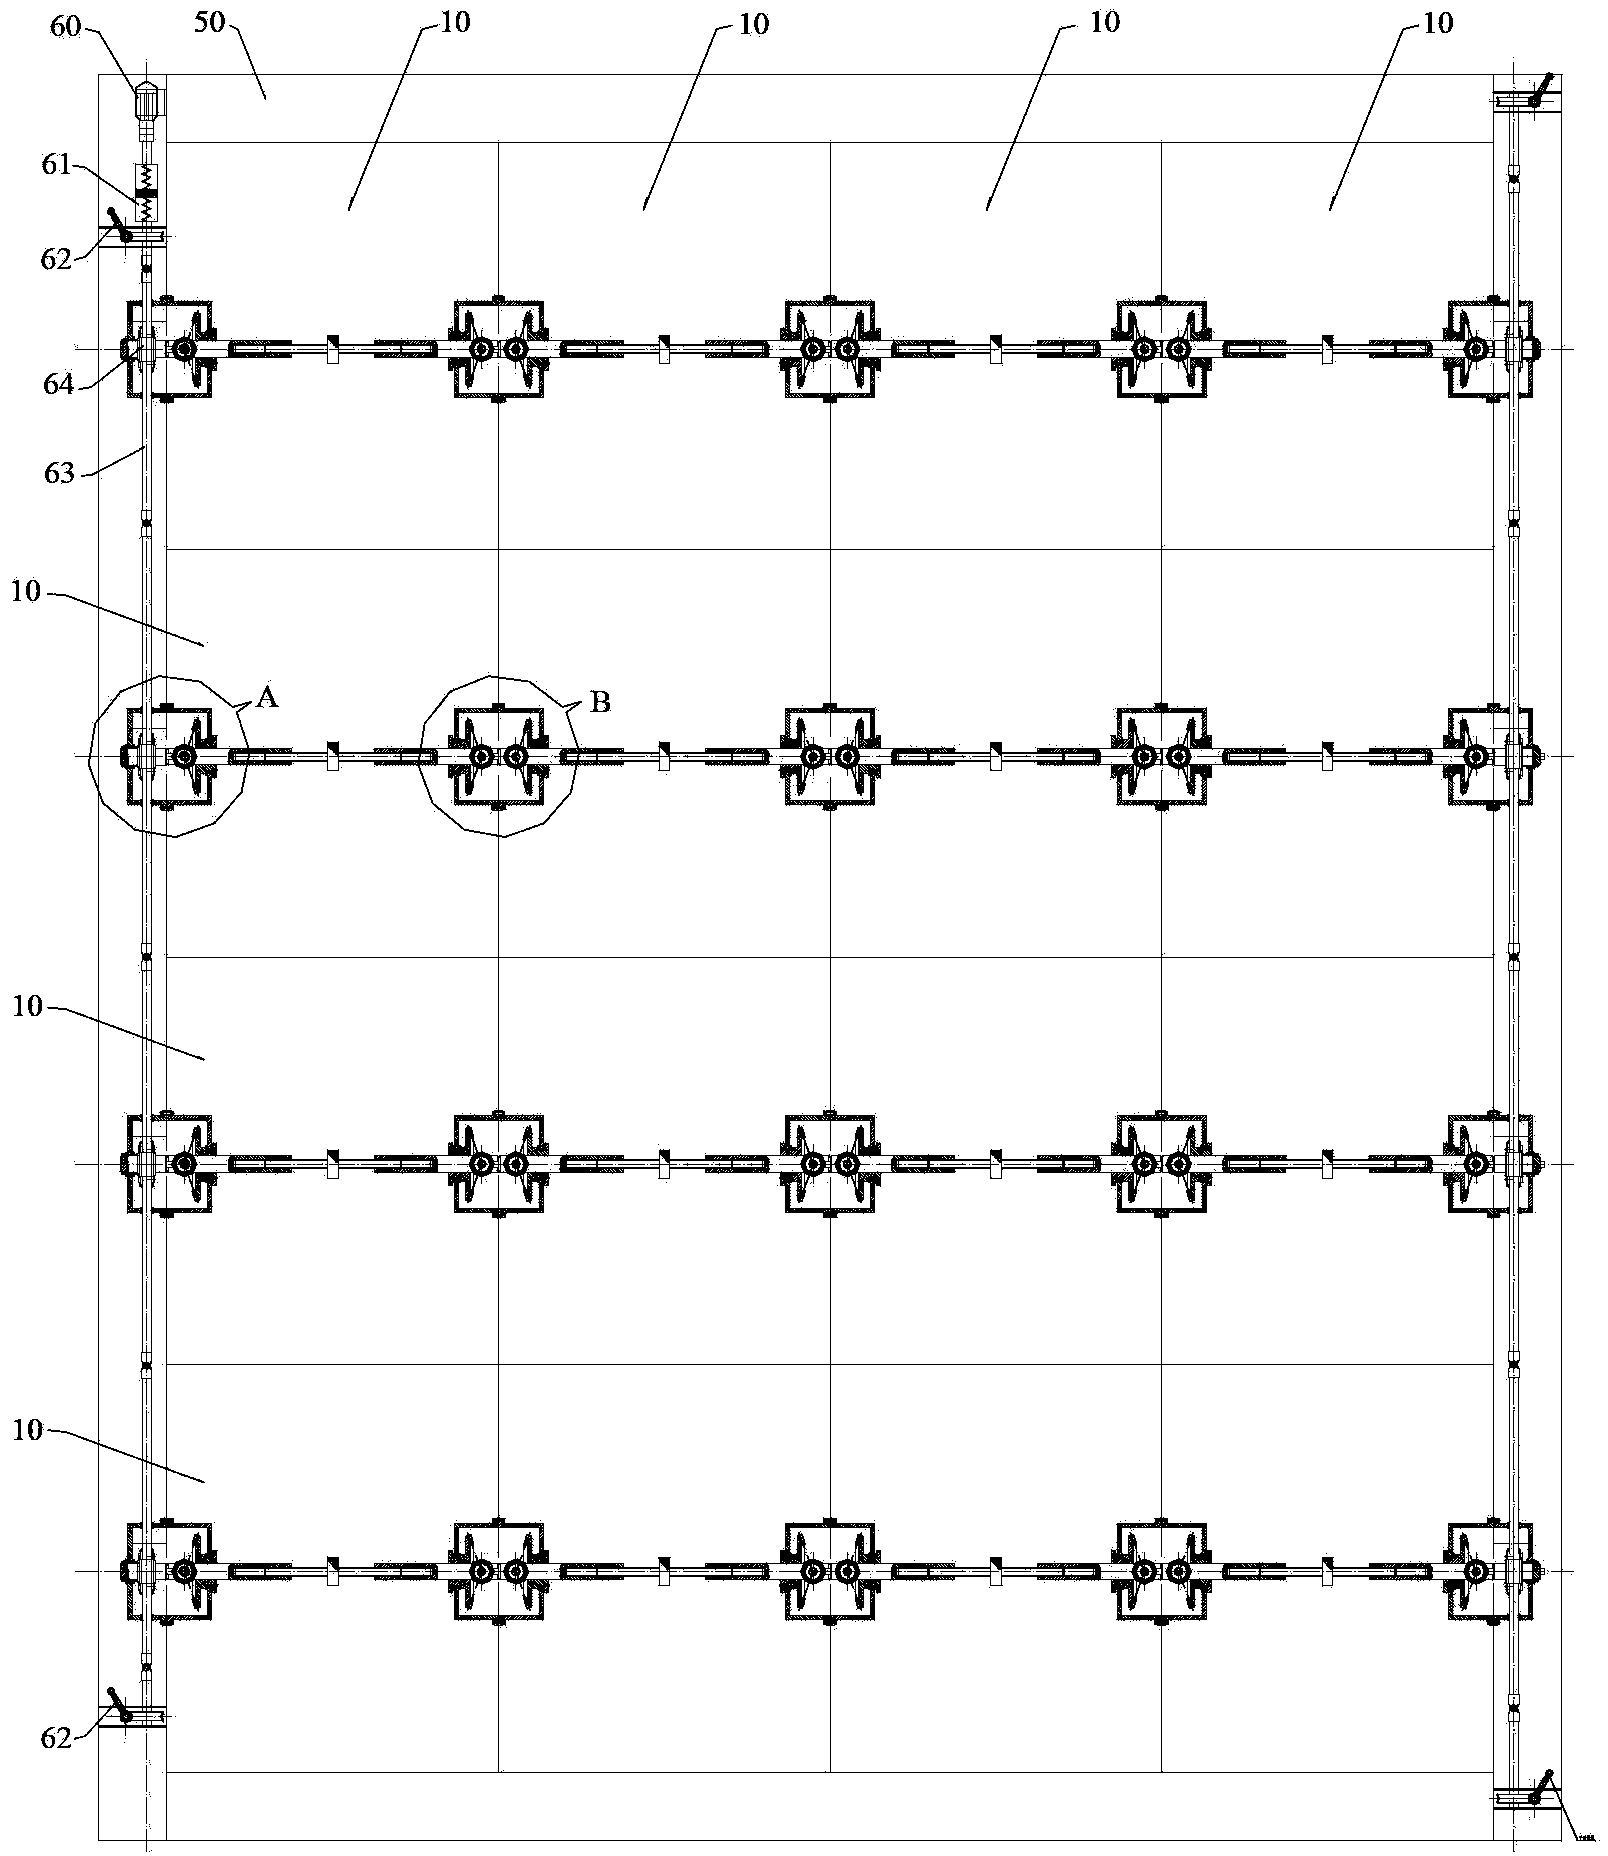 Unit module combined air valve